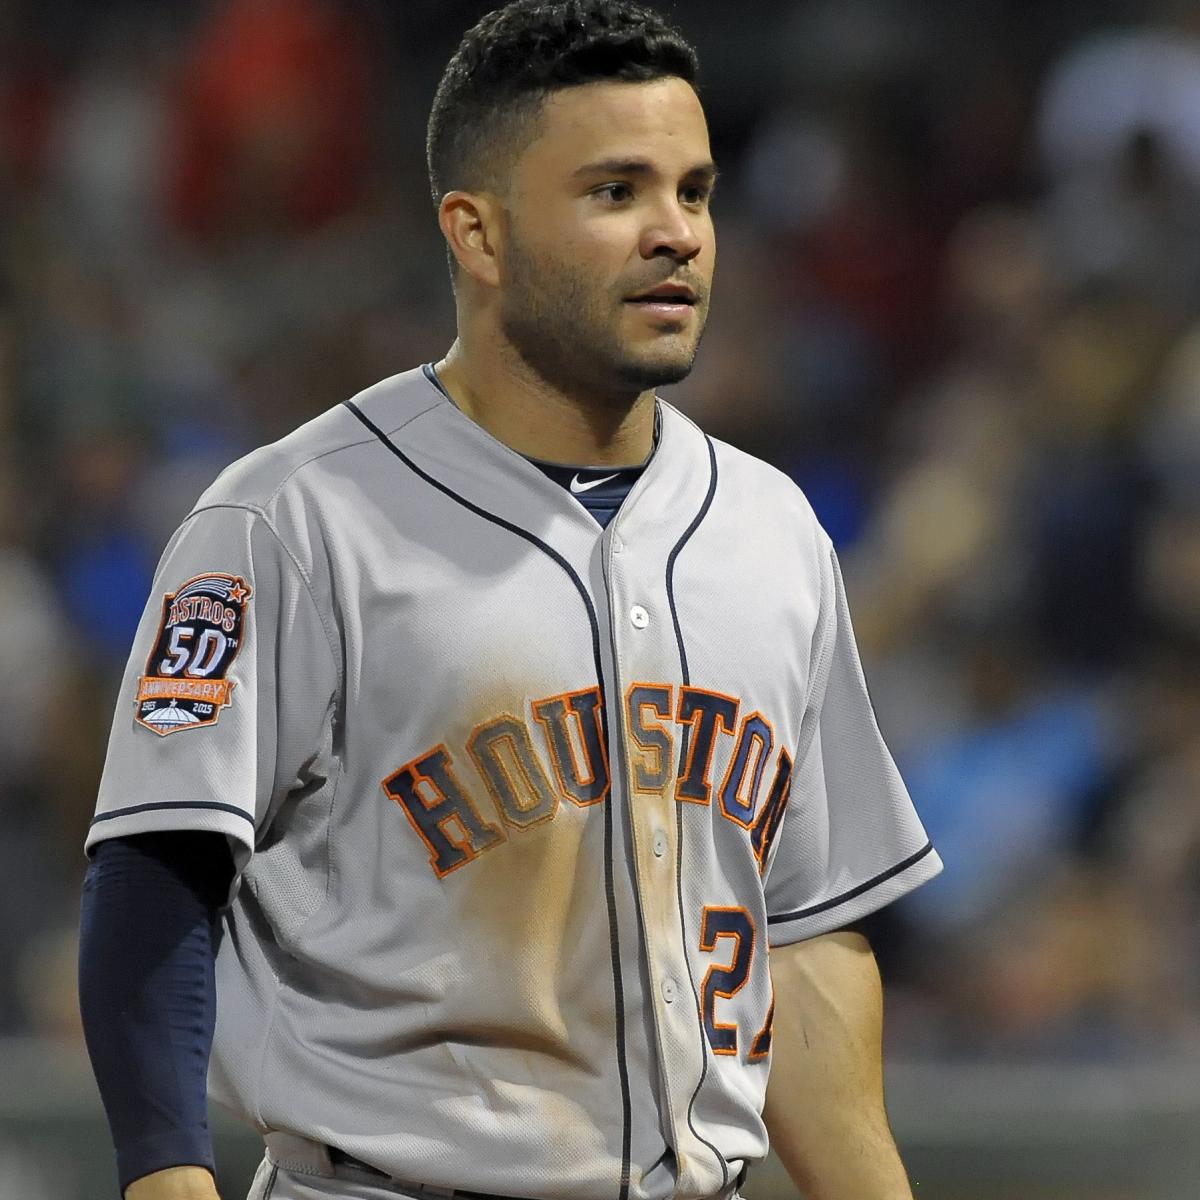 This Week in Baseball - Kelvin Herrera Trade, Astros Streak